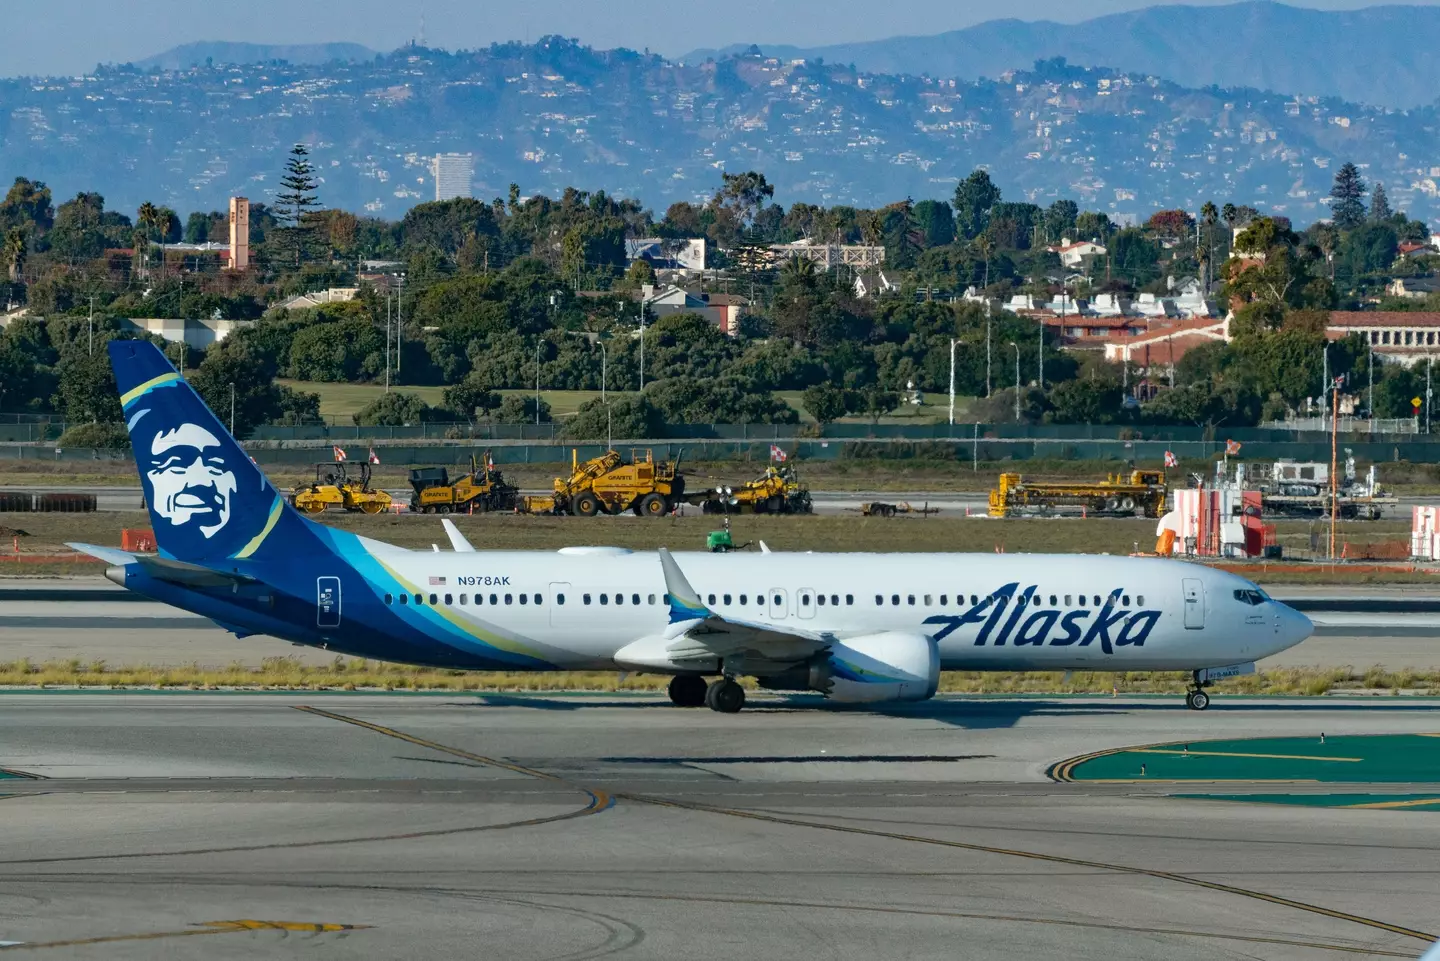 An off-duty pilot allegedly tried to crash an Alaska Airlines flight.